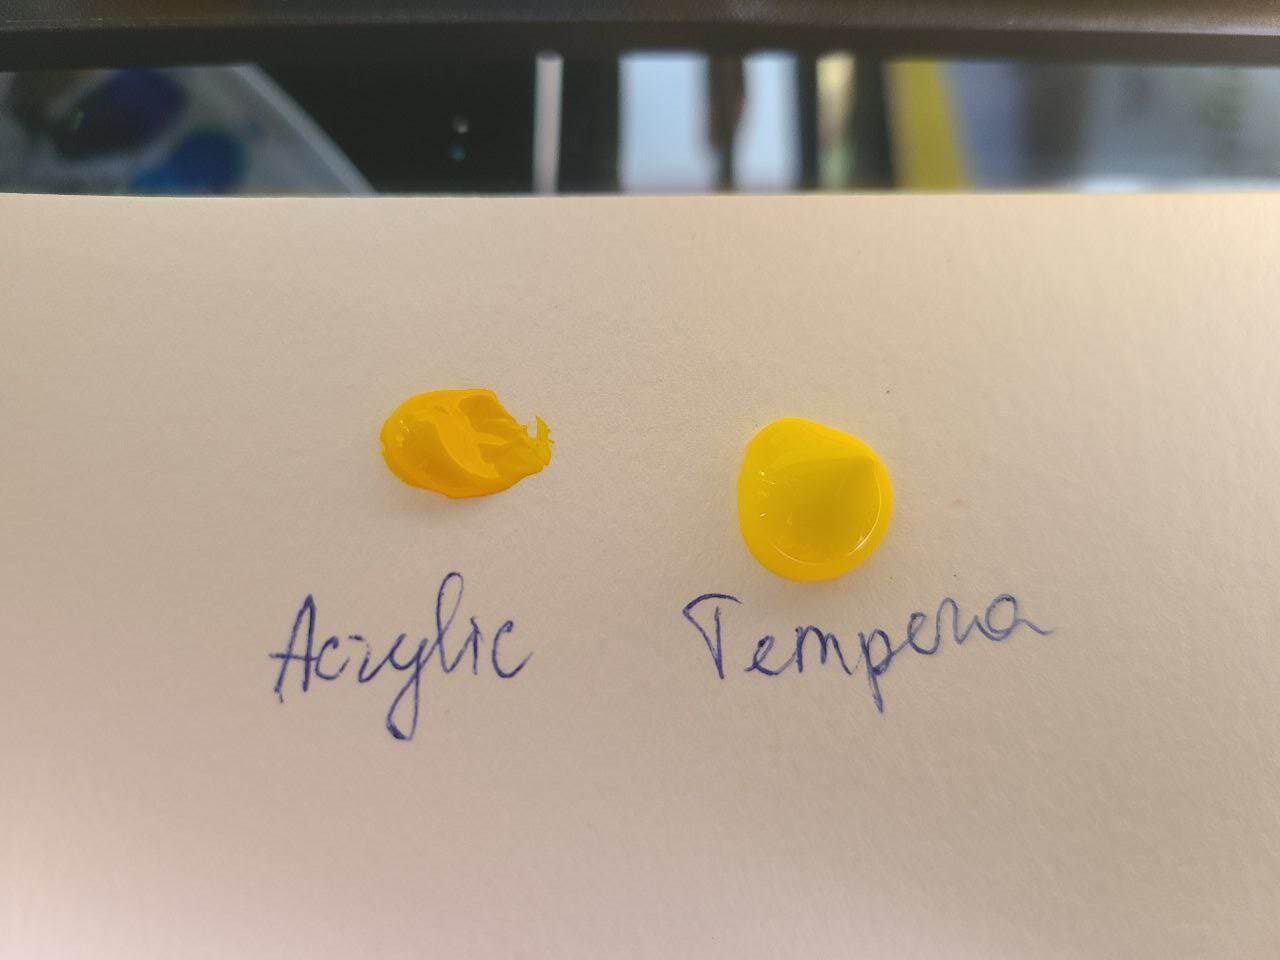 tempera vs acrylic consistency